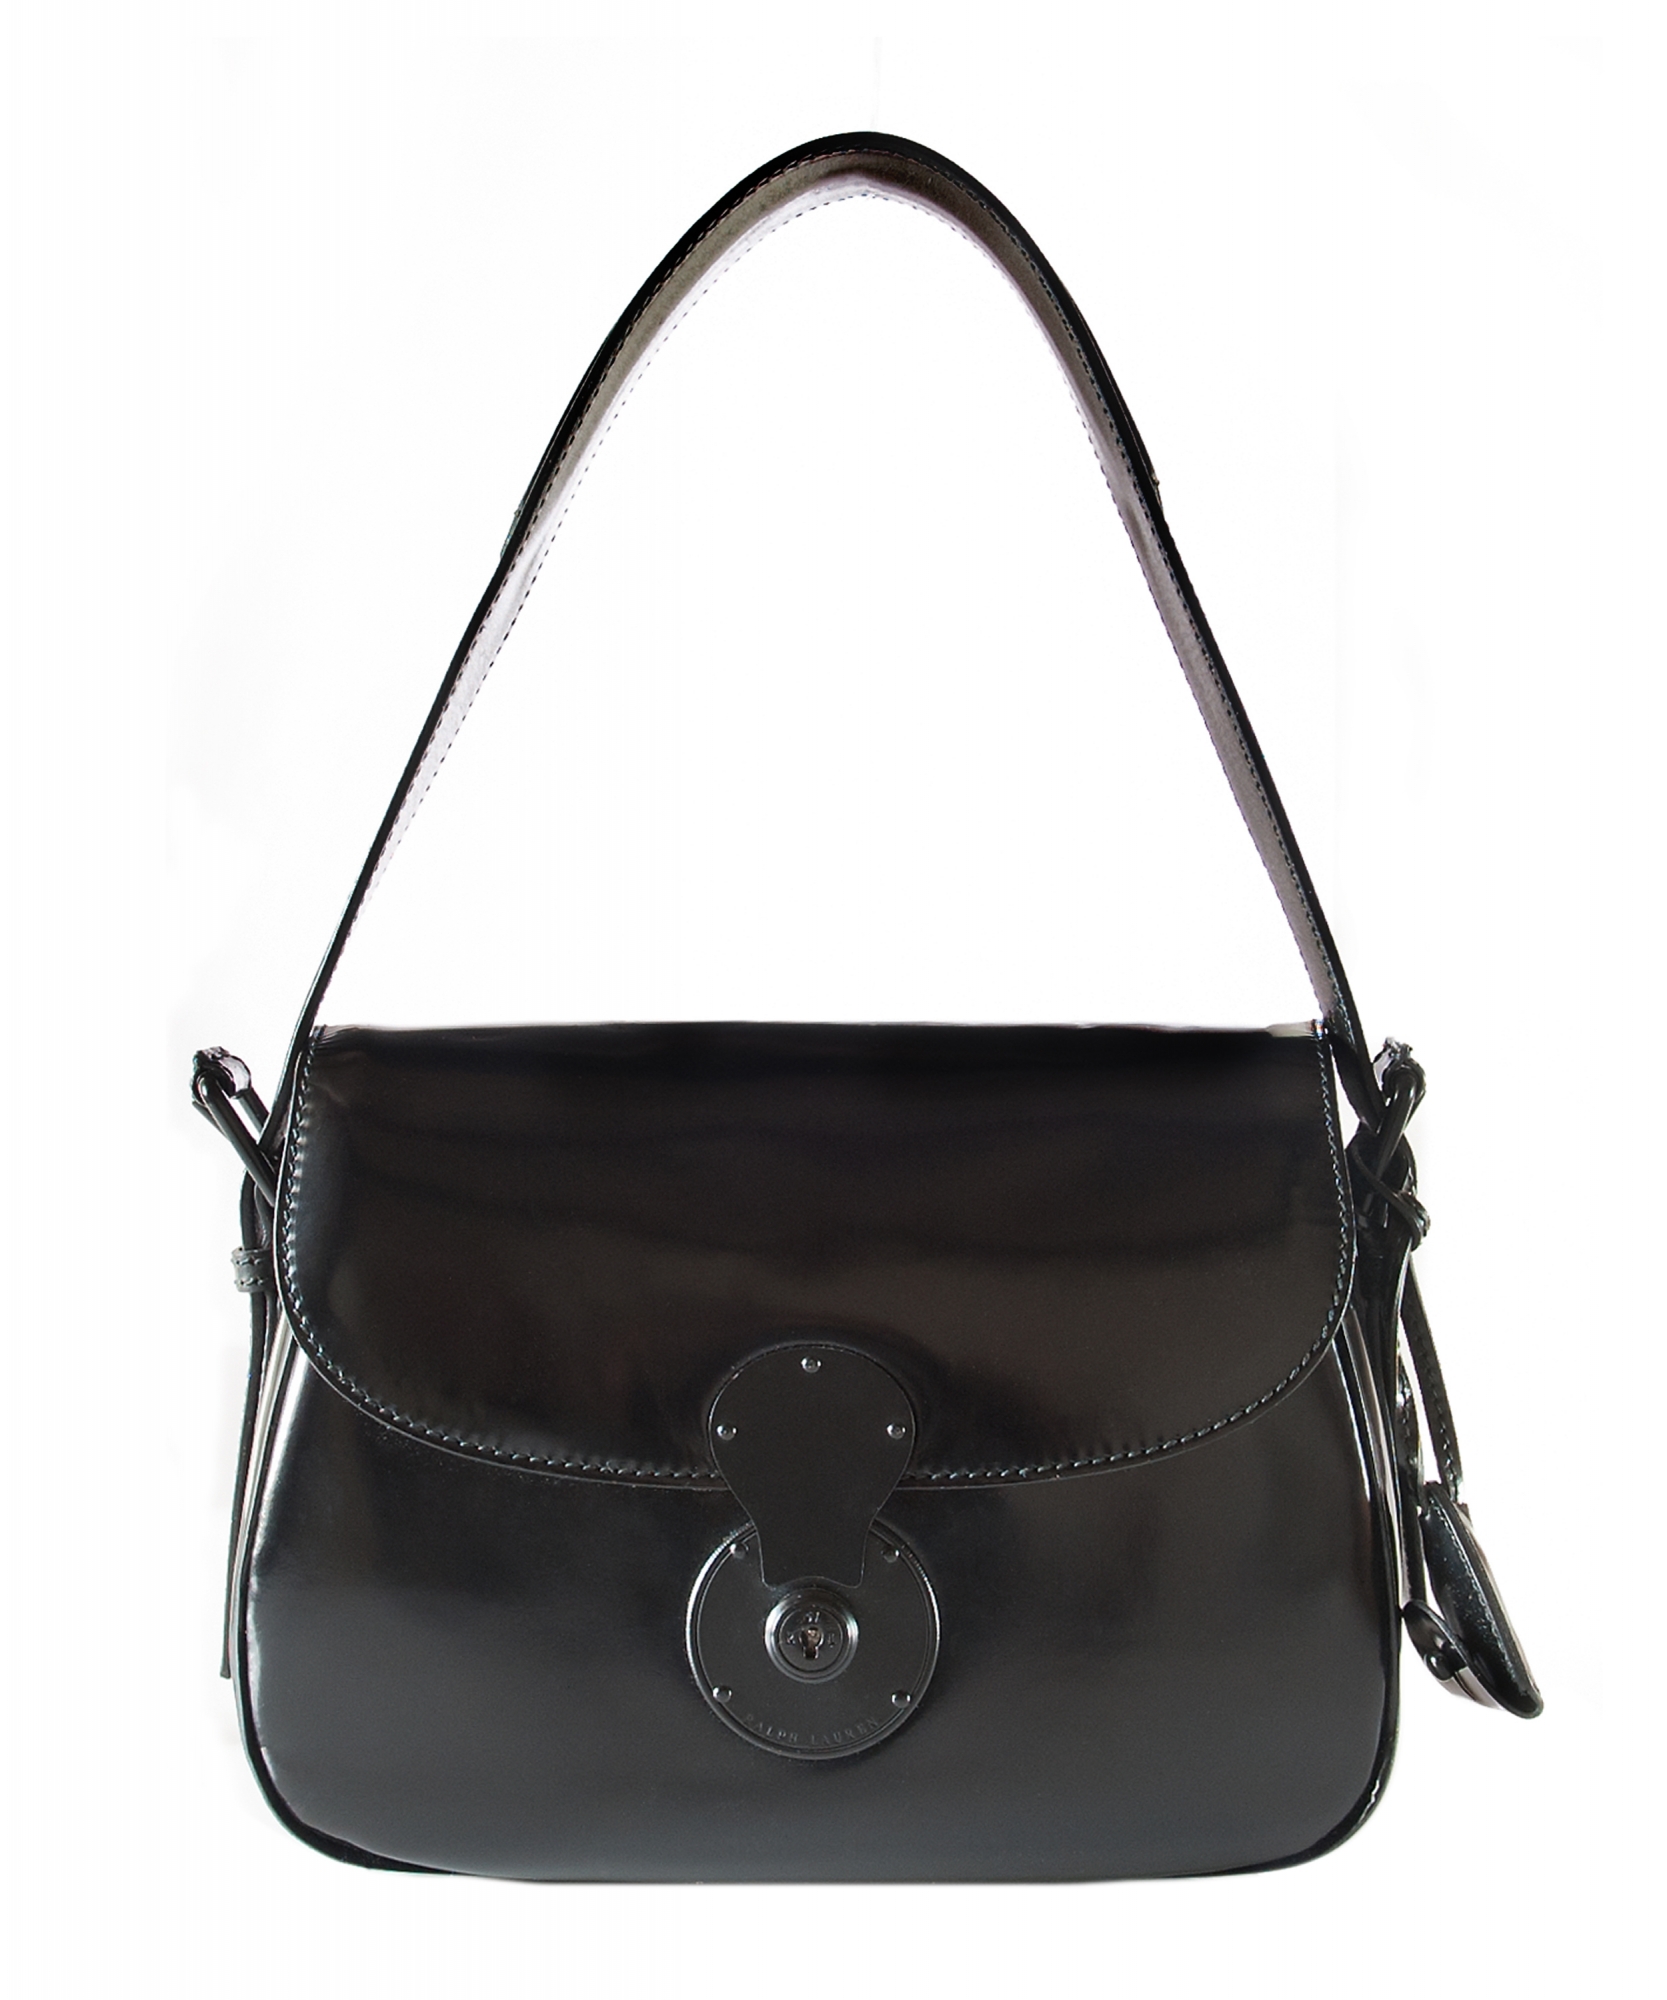 ralph lauren handbag | Nordstrom